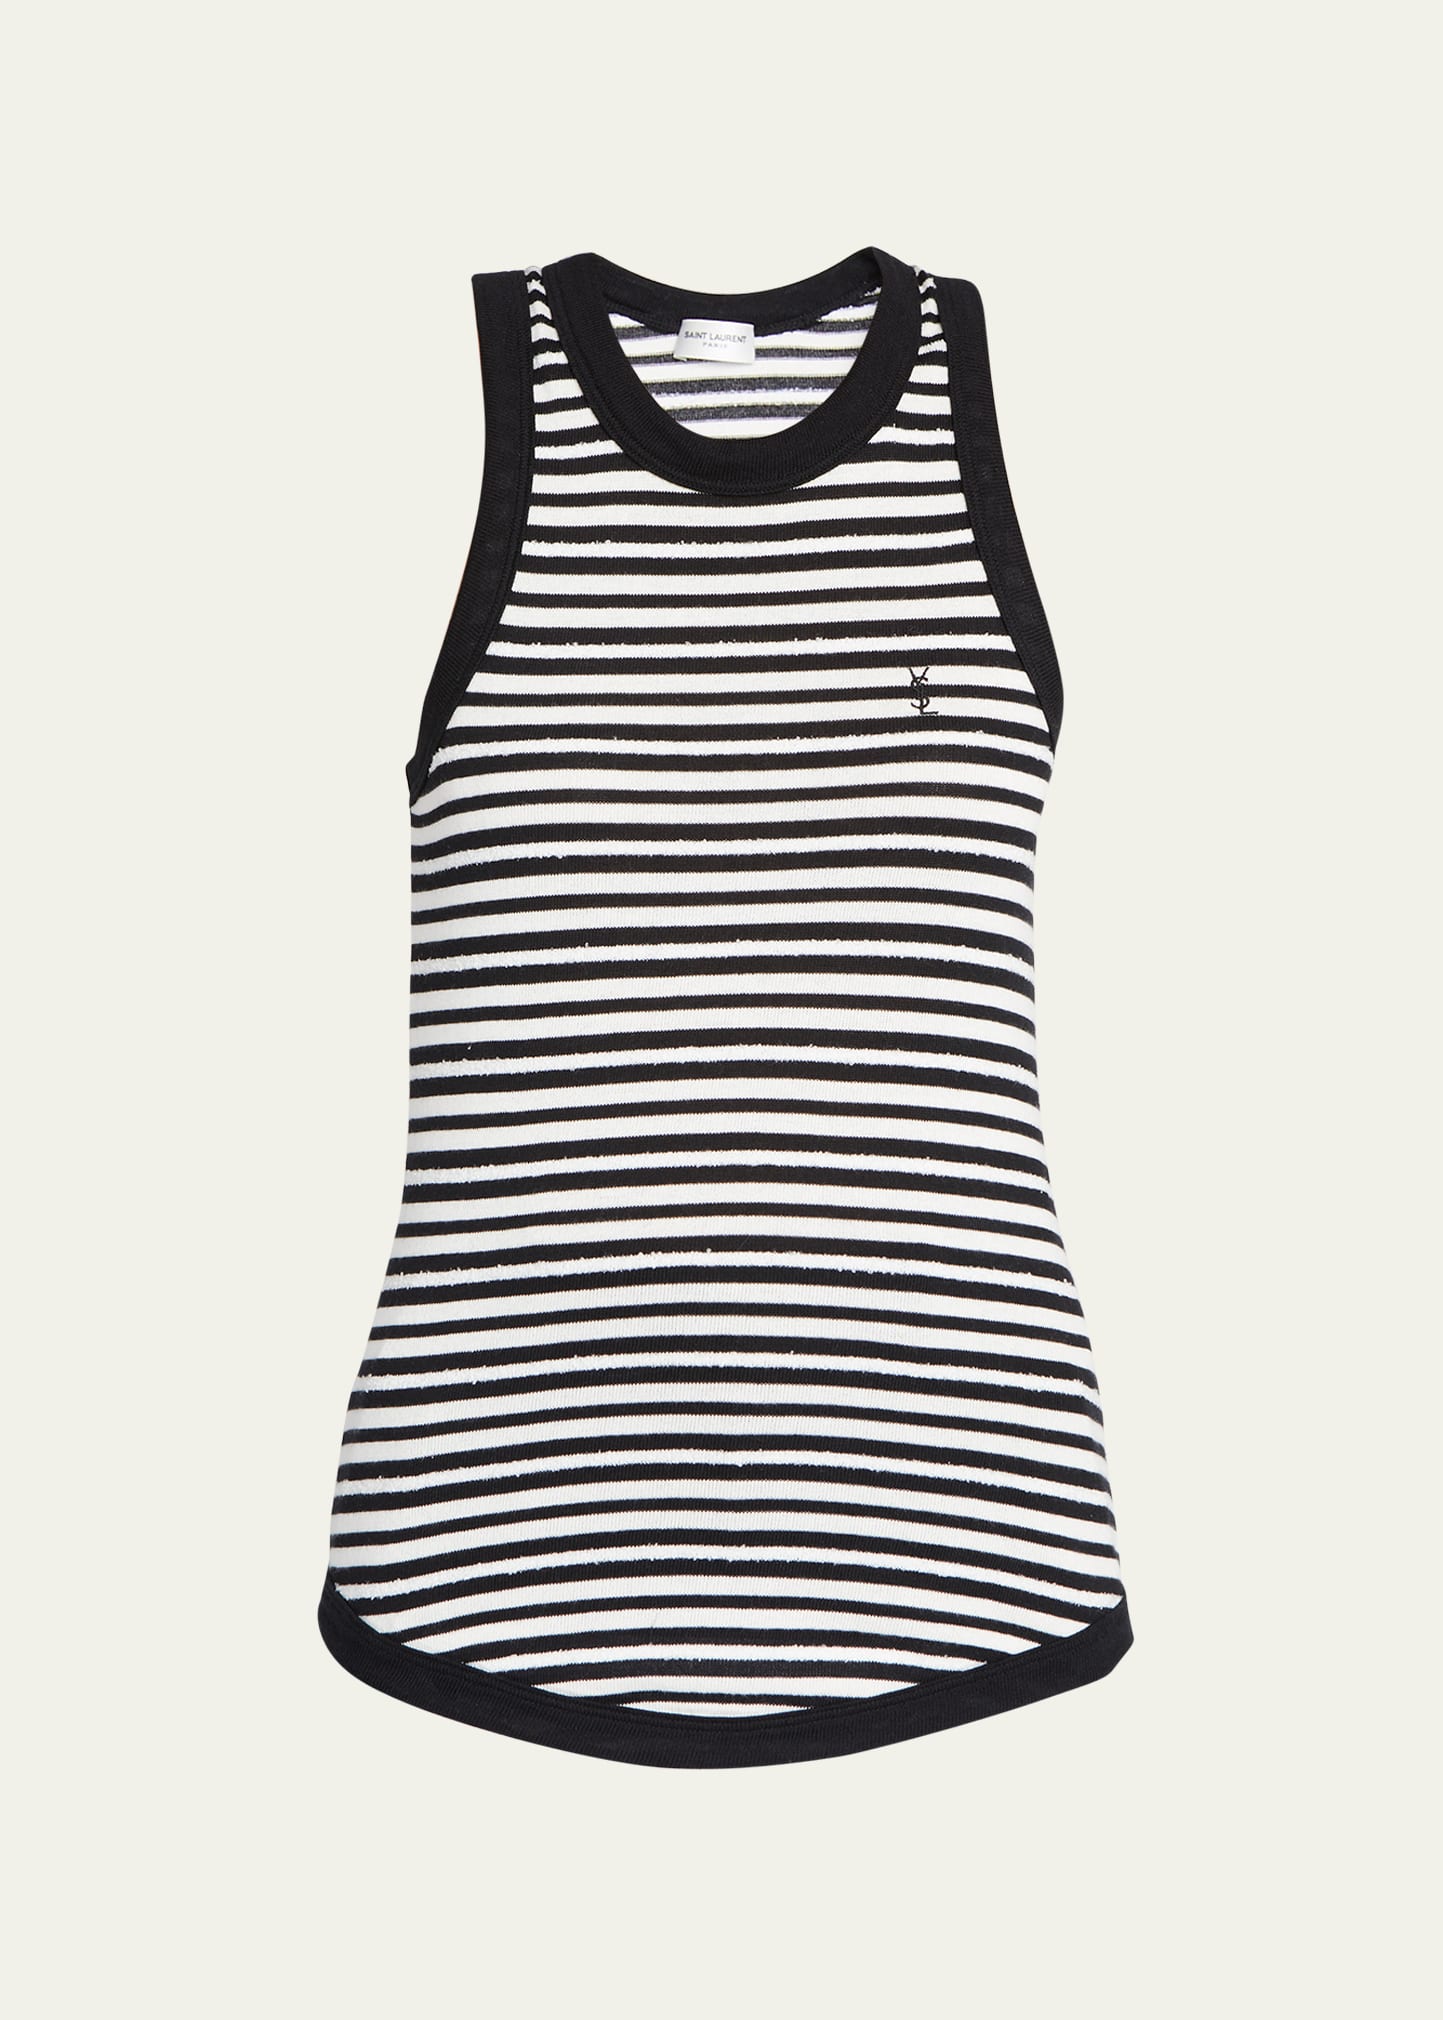 Saint Laurent Striped Monogram Shirt - ShopStyle Tops